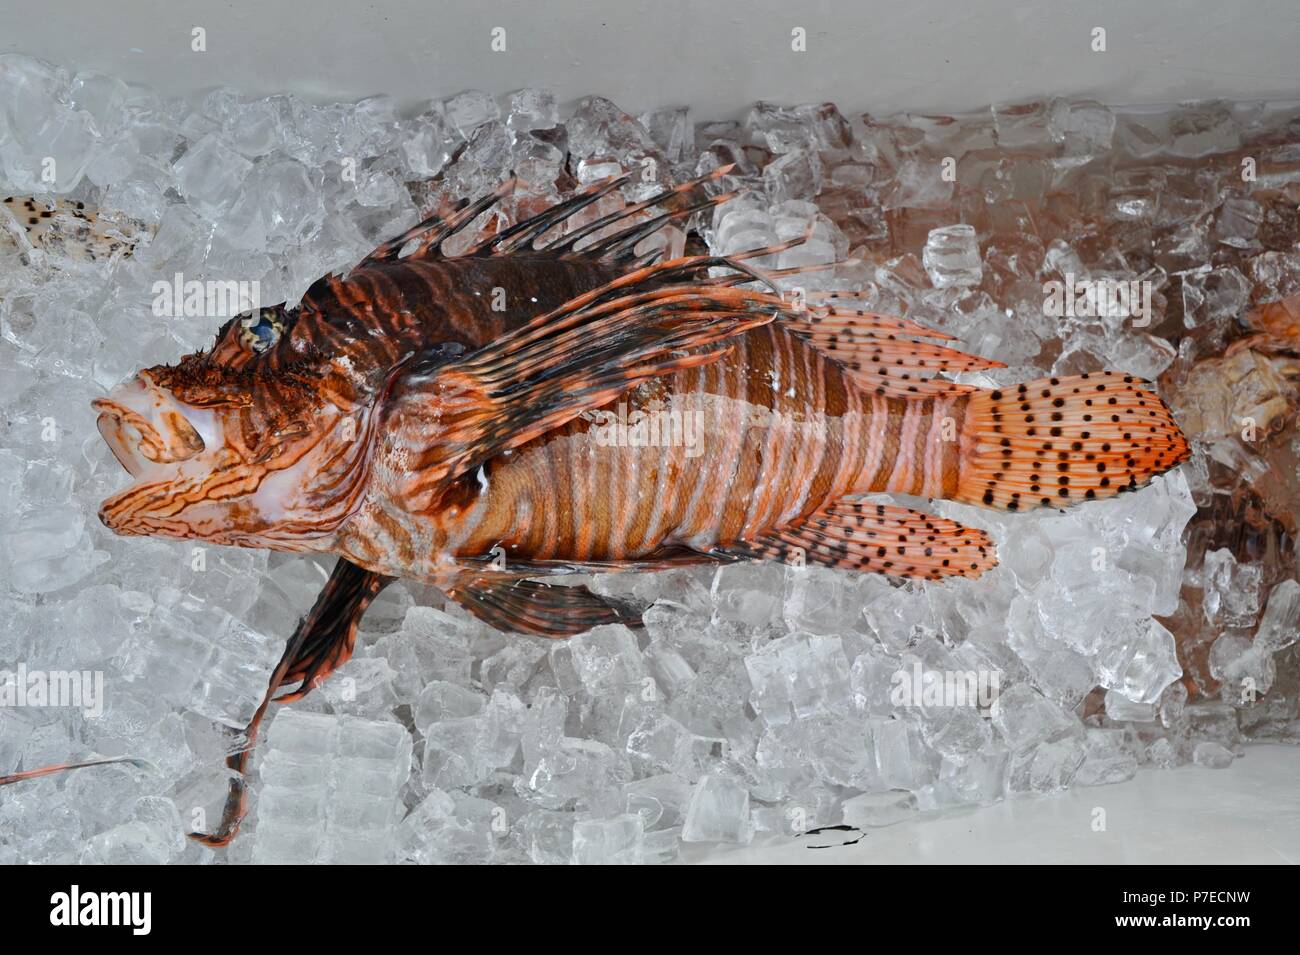 Frisch gefangen mit einem Speer in Salzwasser, invasive Rotfeuerfische auf Eis, Feuerfische sind ein großes Problem für einheimische Fische reef Arten, Marathon Key, Florida, USA Stockfoto